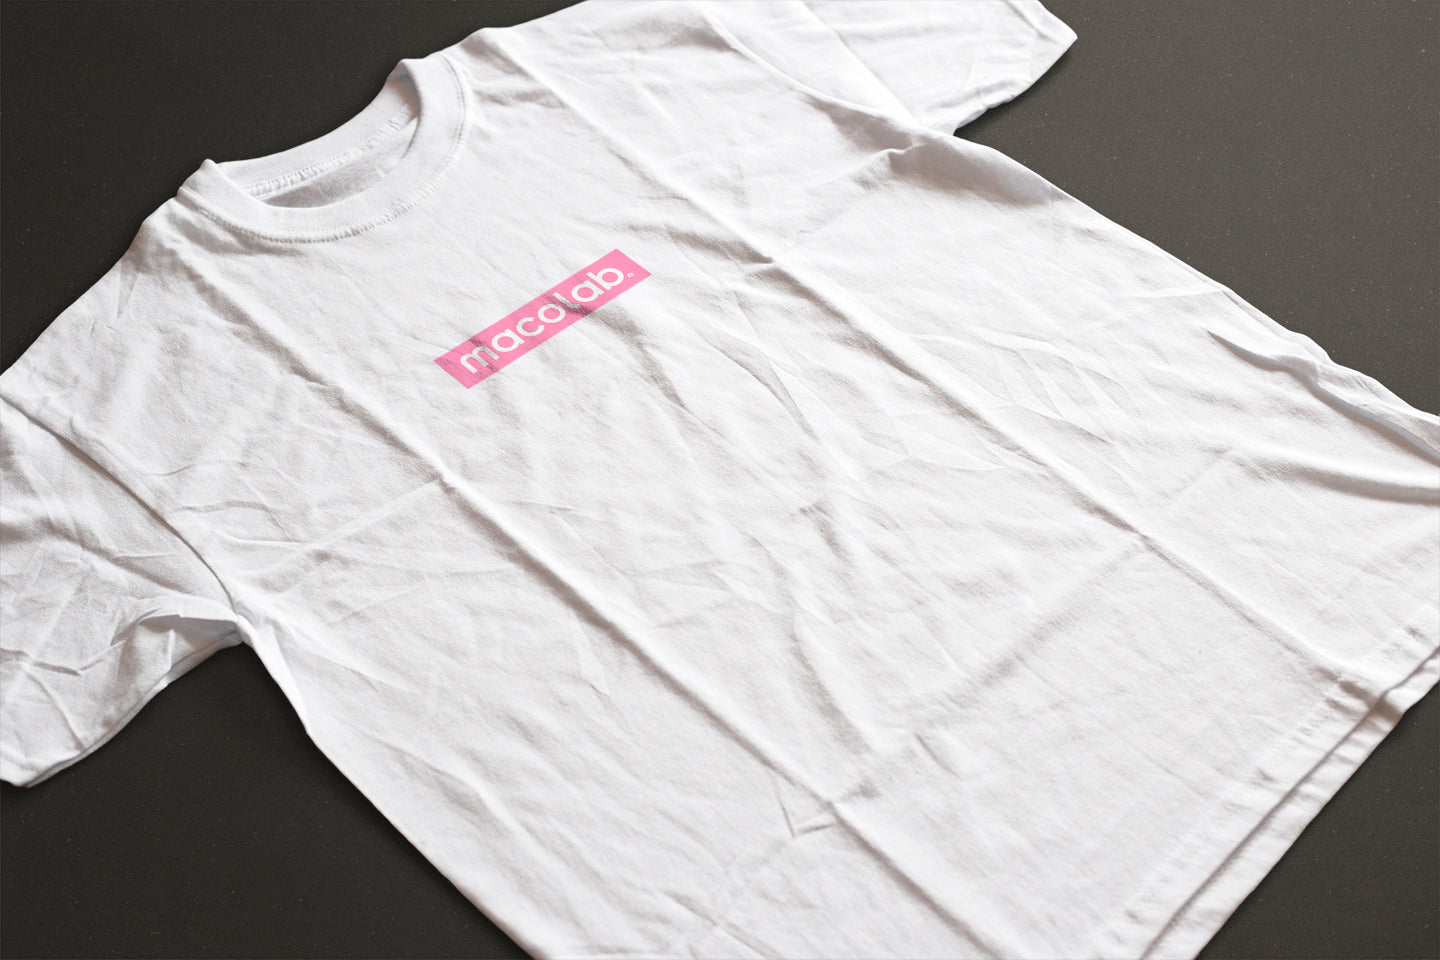 macolabロゴTシャツ[pink]